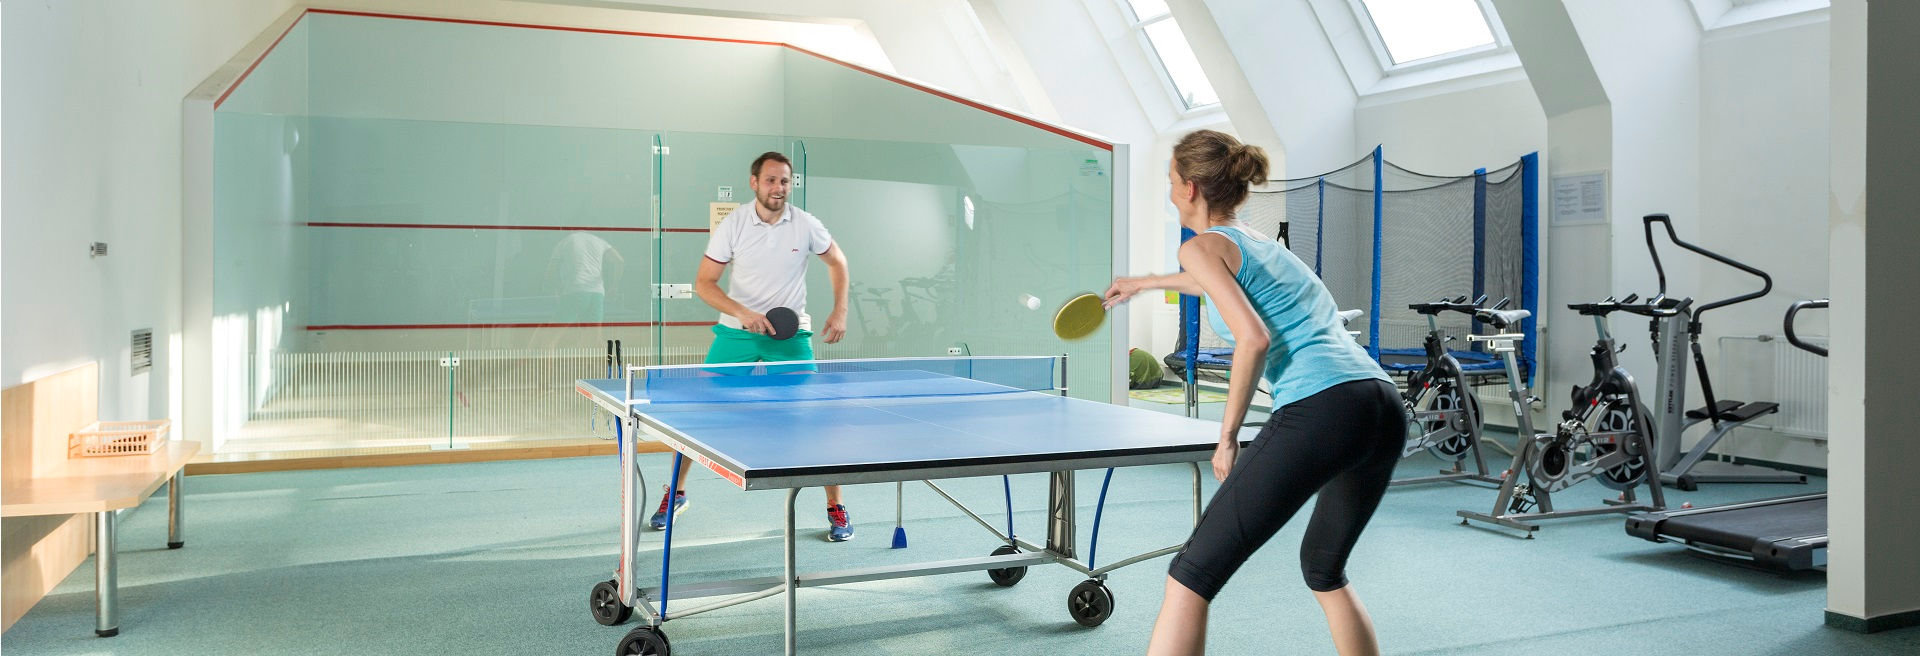 Squash i tenis stolowy - Hotel Wellness DIANA